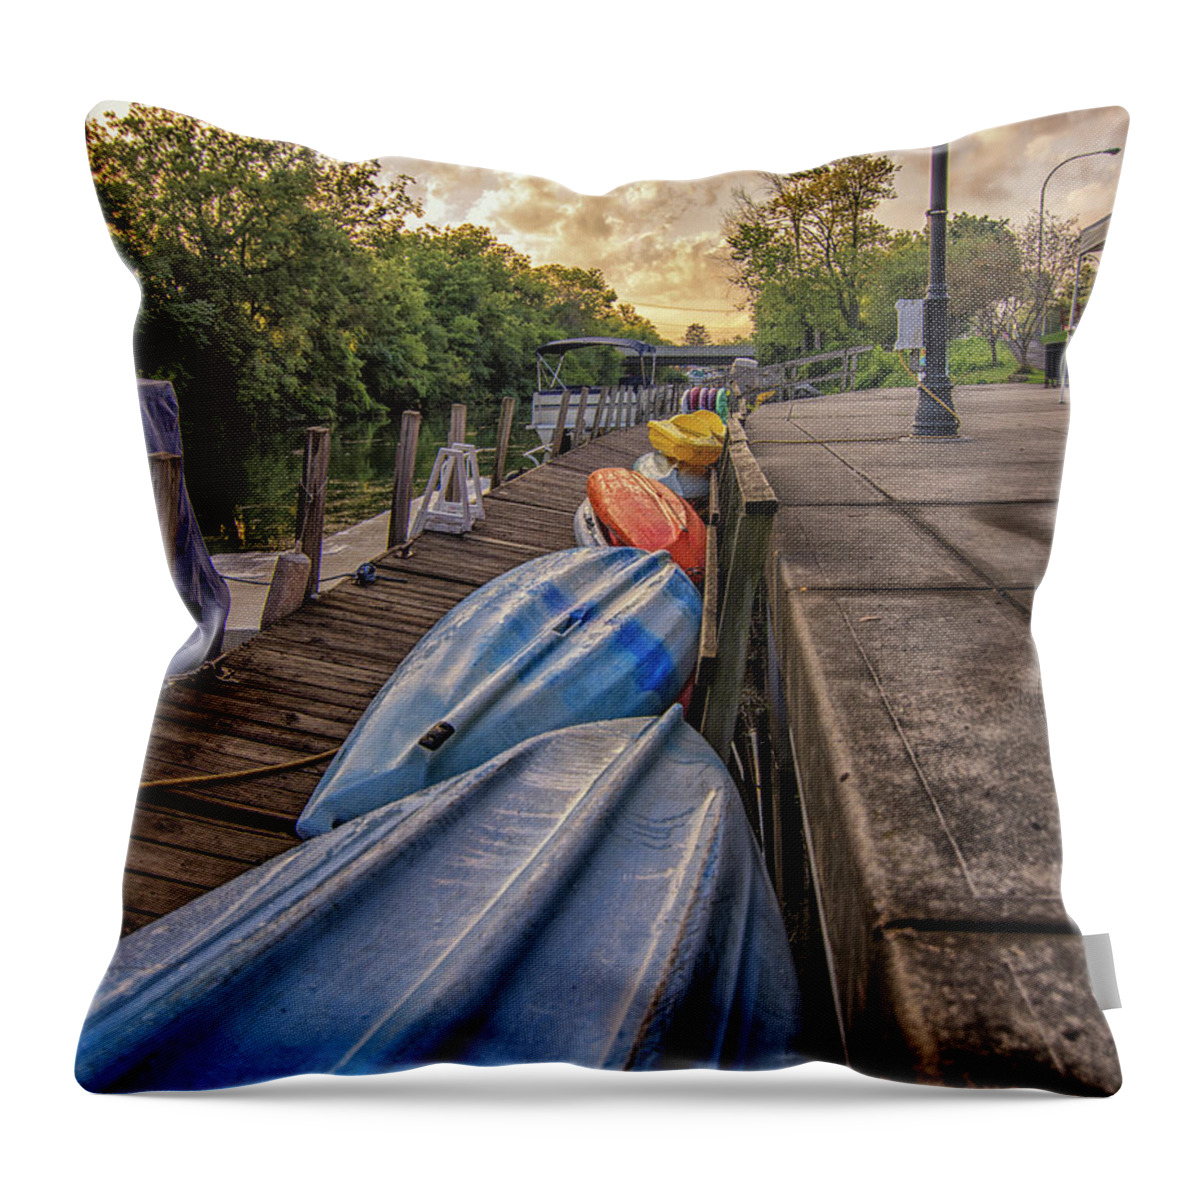 Kayak Throw Pillow featuring the photograph Kayaks by Deborah Ritch